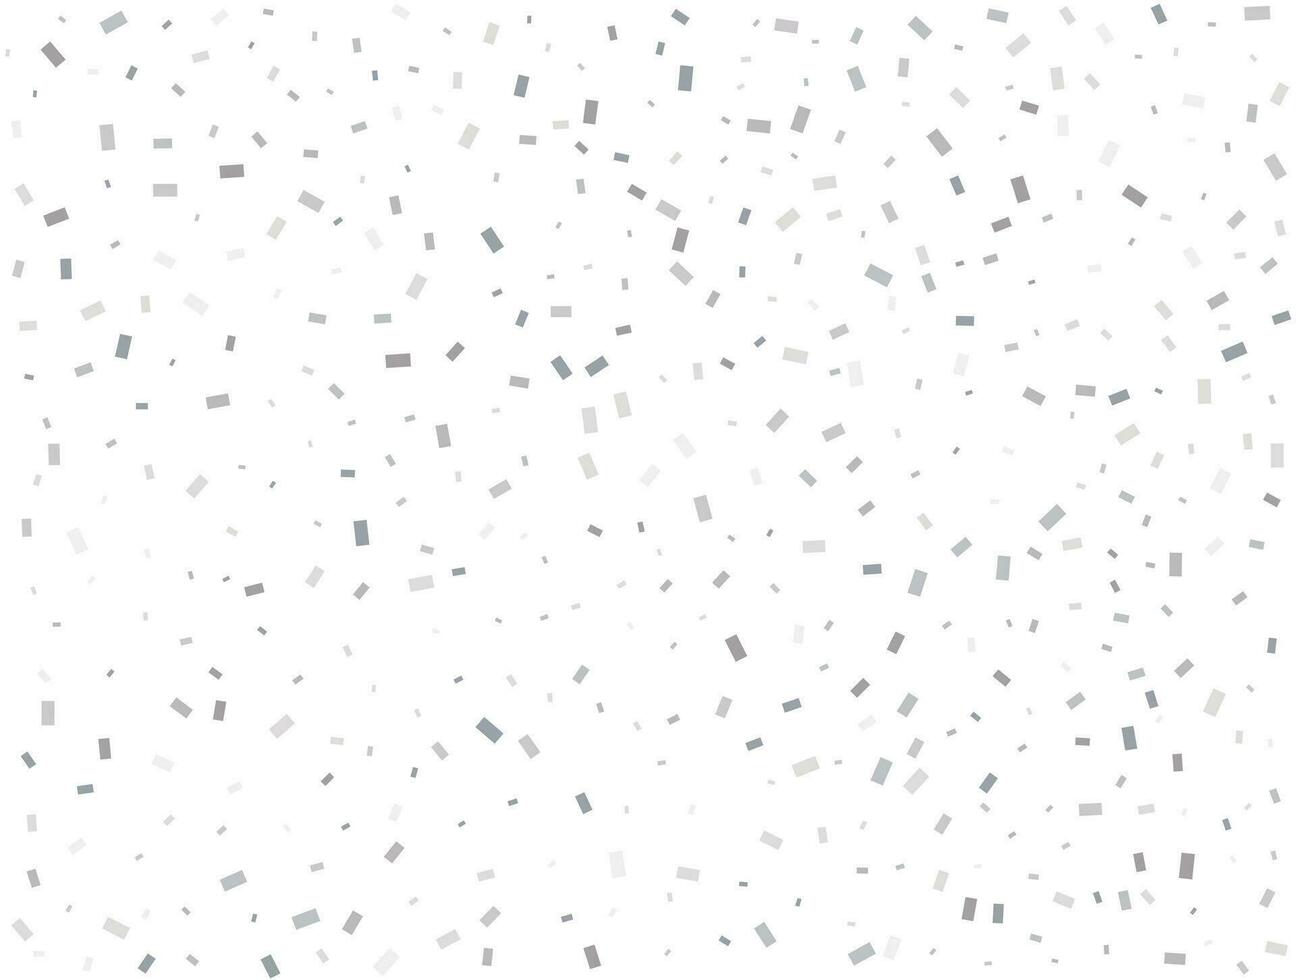 ljus silver- rektangulär glitter konfetti bakgrund. vit festlig textur. vektor